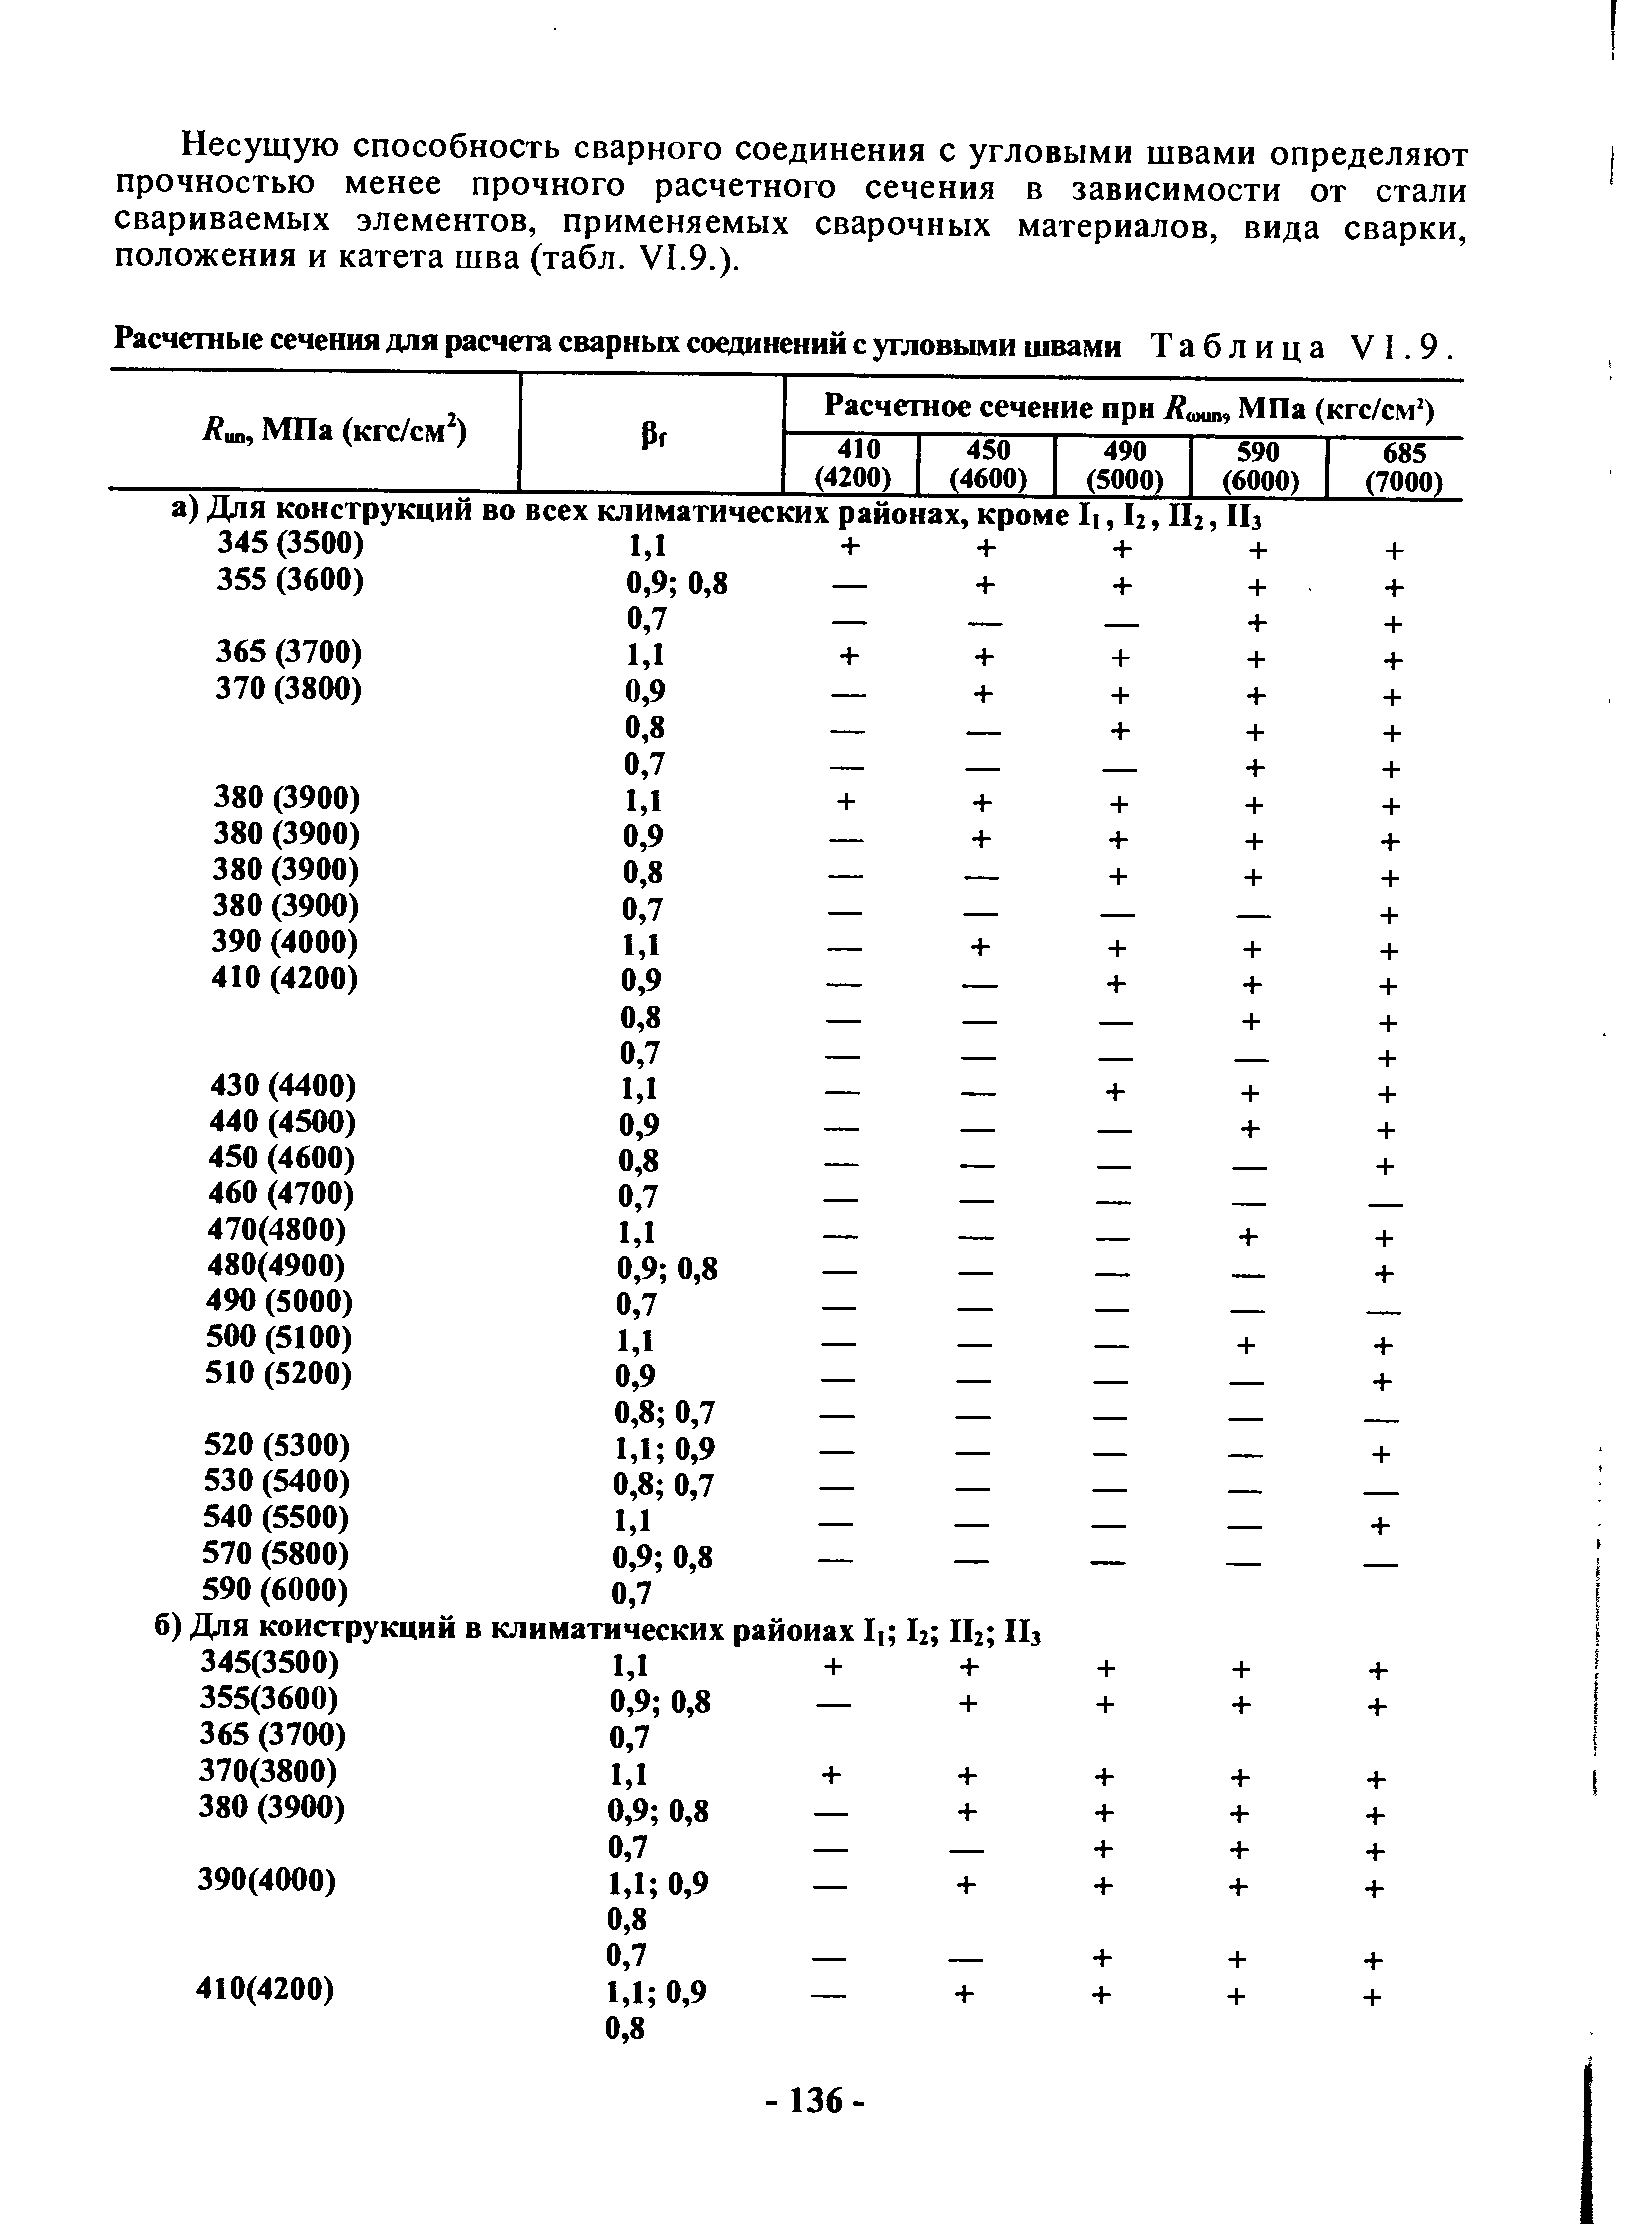 Расчетные сечения для расчета сварных соединений с угловыми швами Таблица VI.9.